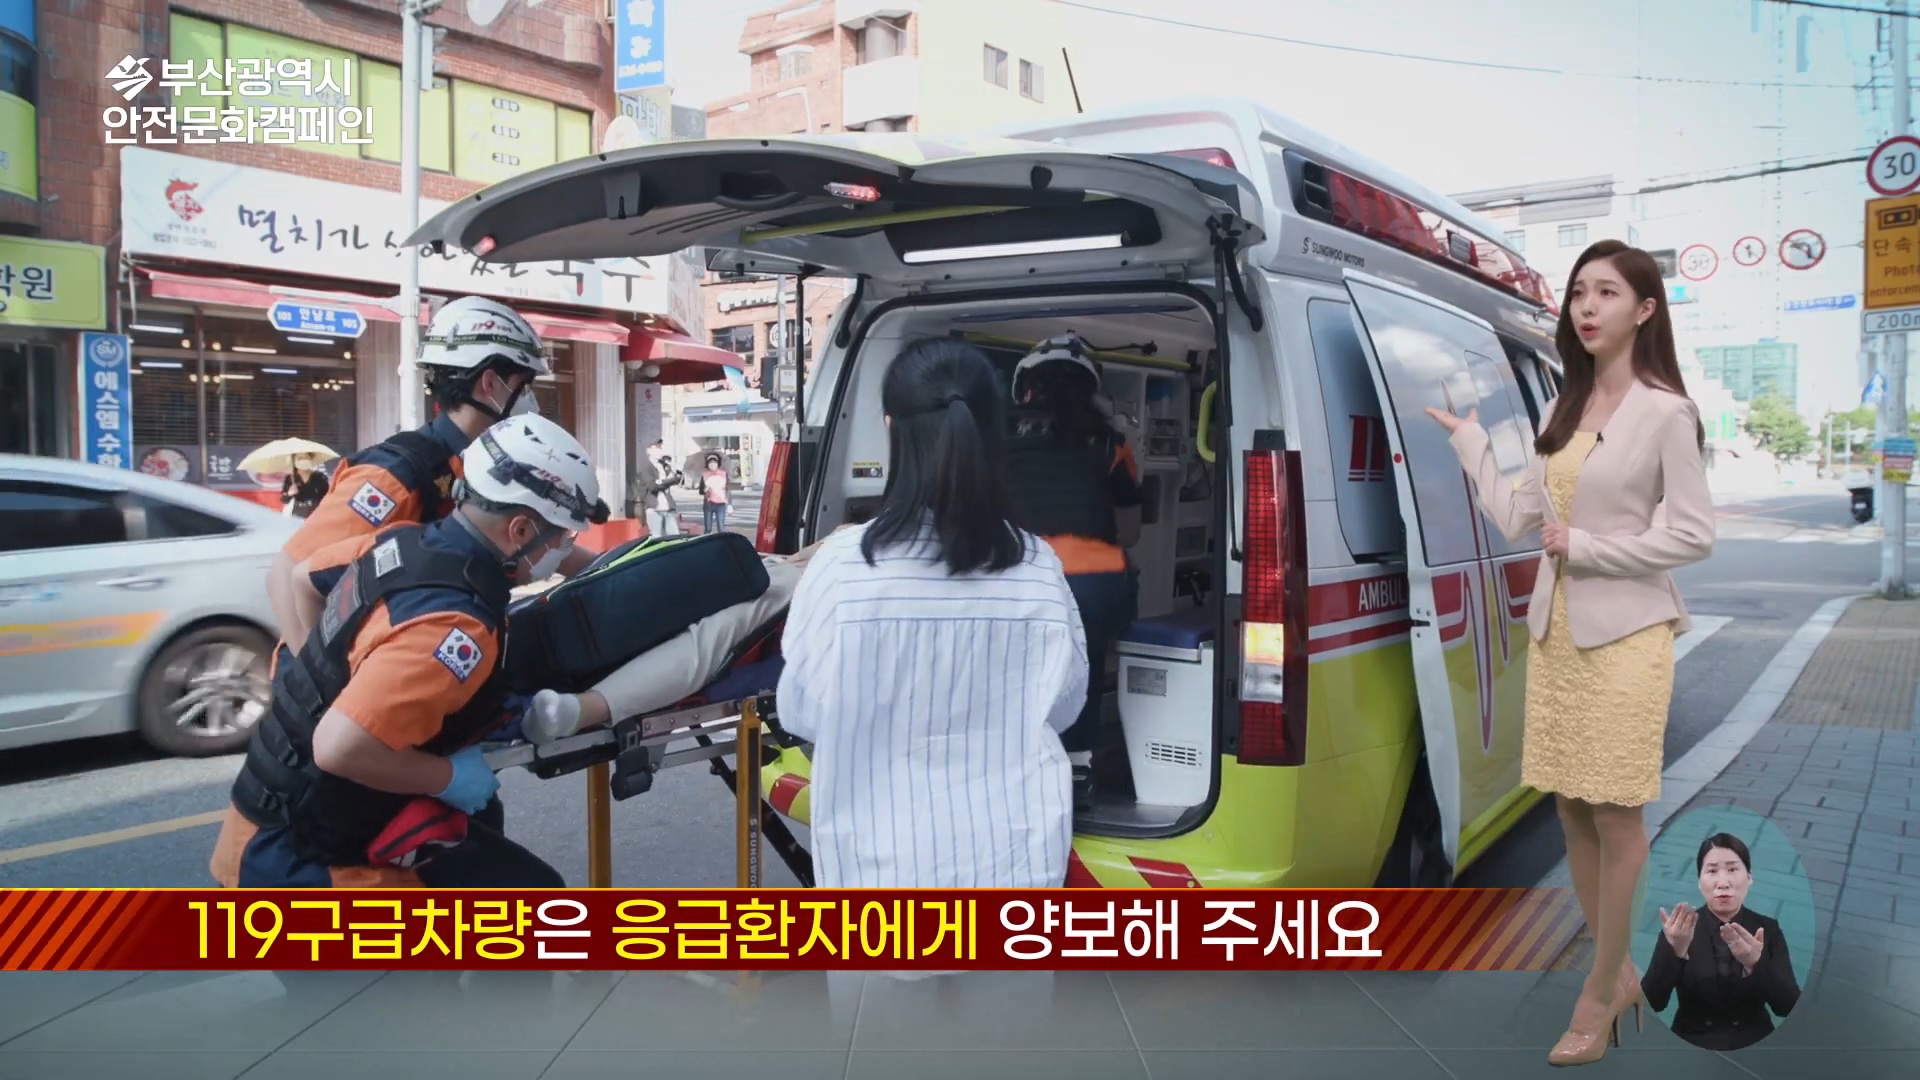 부산광역시 안전문화캠페인. 119구급차량은 응급환자에게 양보해 주세요.